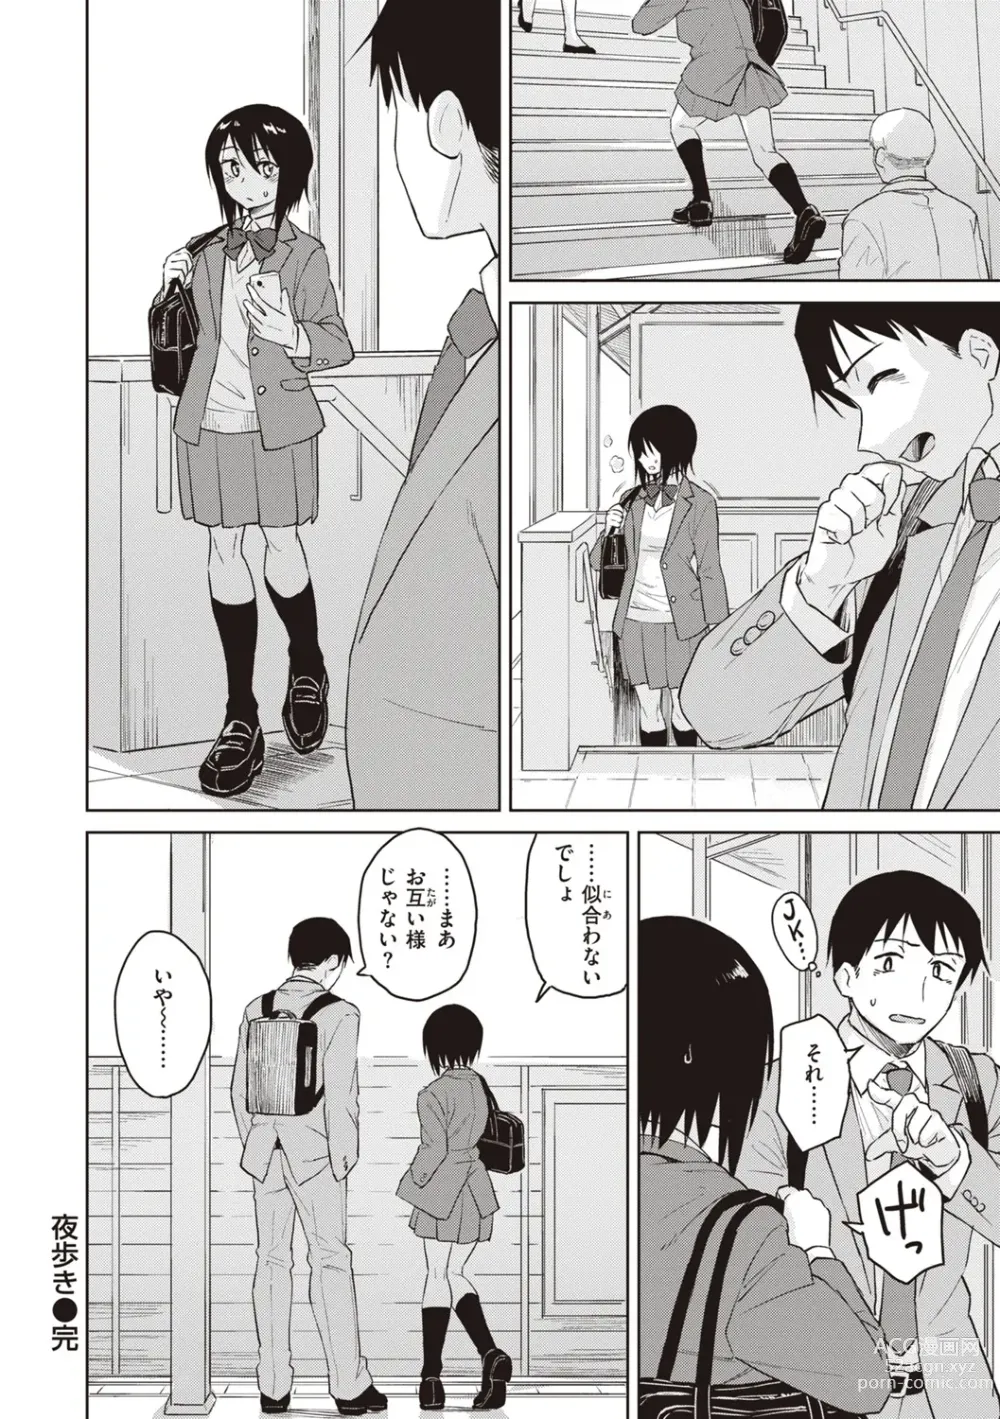 Page 176 of manga Waruiko no Yoru